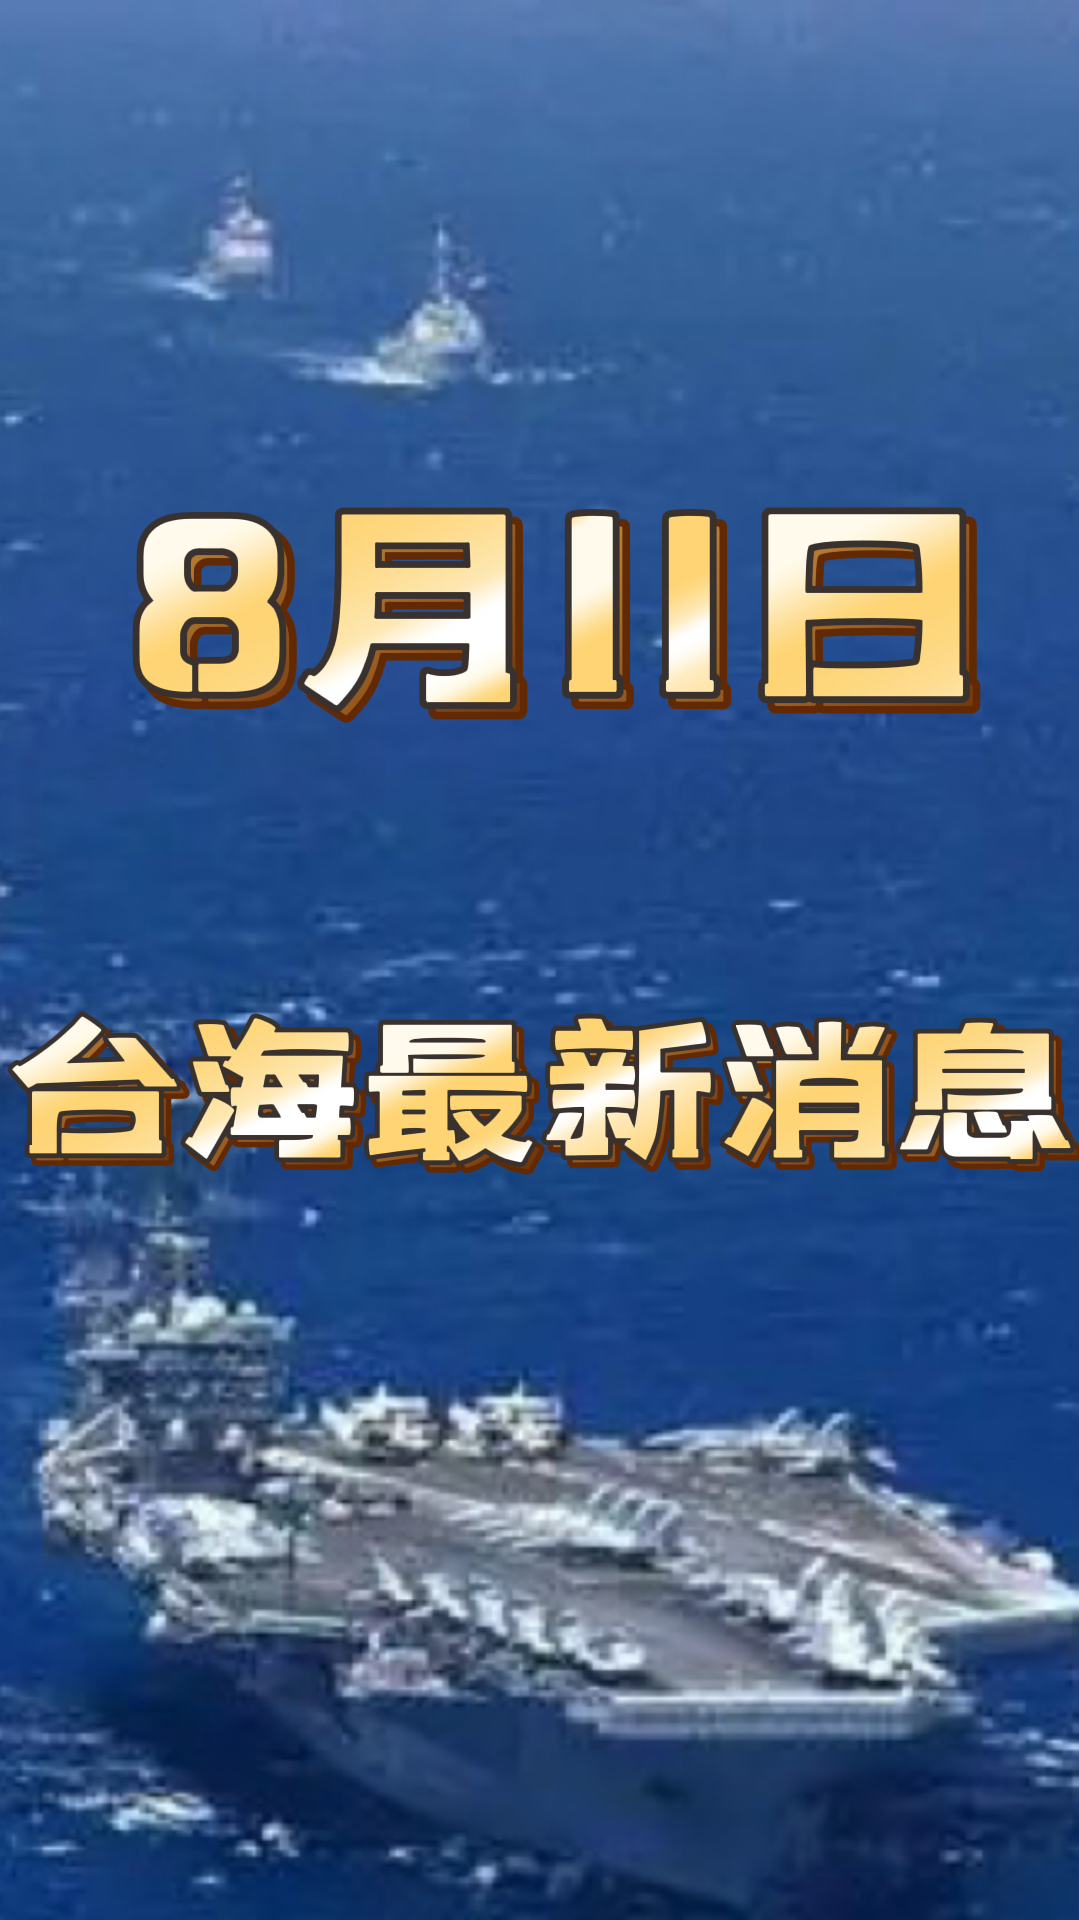 8月11日最新台海消息!国民党装不下去了,称不接受台海演习!